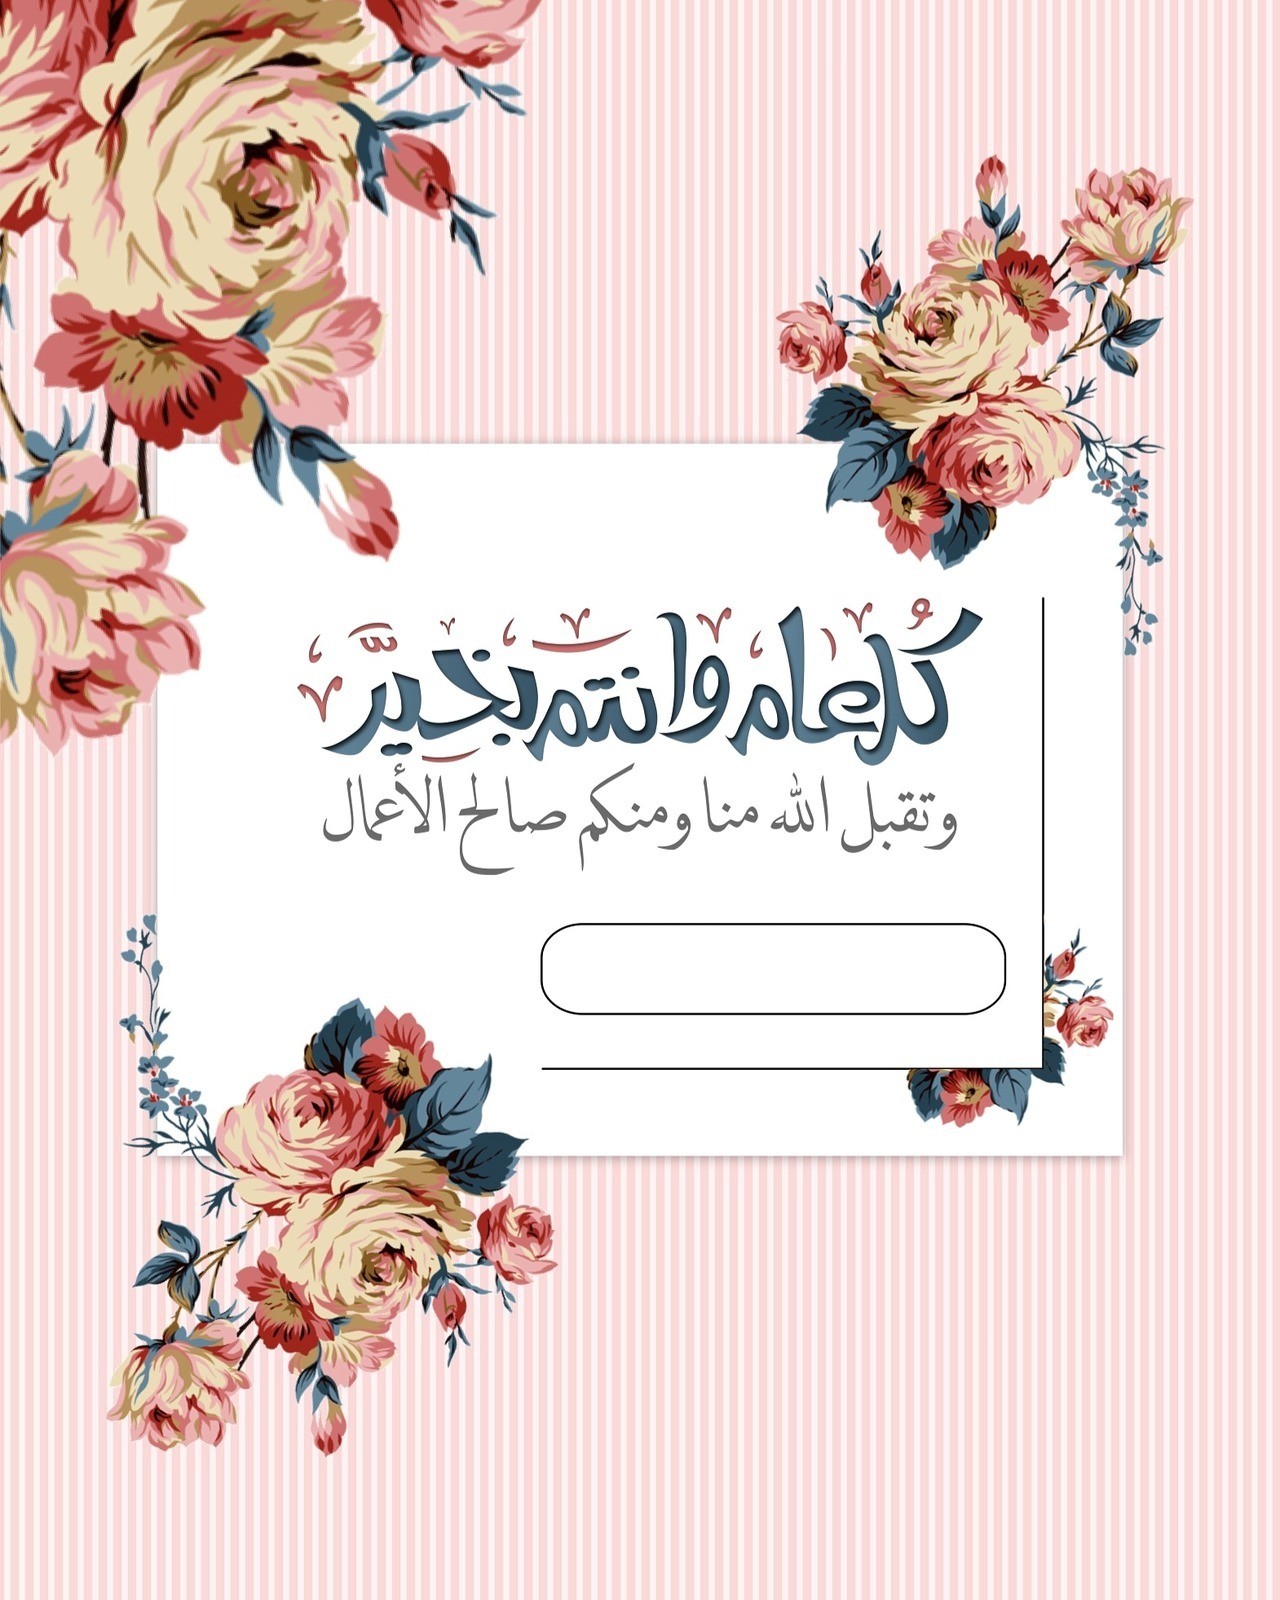 صمم بطاقة تهنئة عيد الفطر السعيد 2021 باسمك واسم أحبائك | وكالة شمس نيوز - Shms News | آخر أخبار فلسطين والعالم